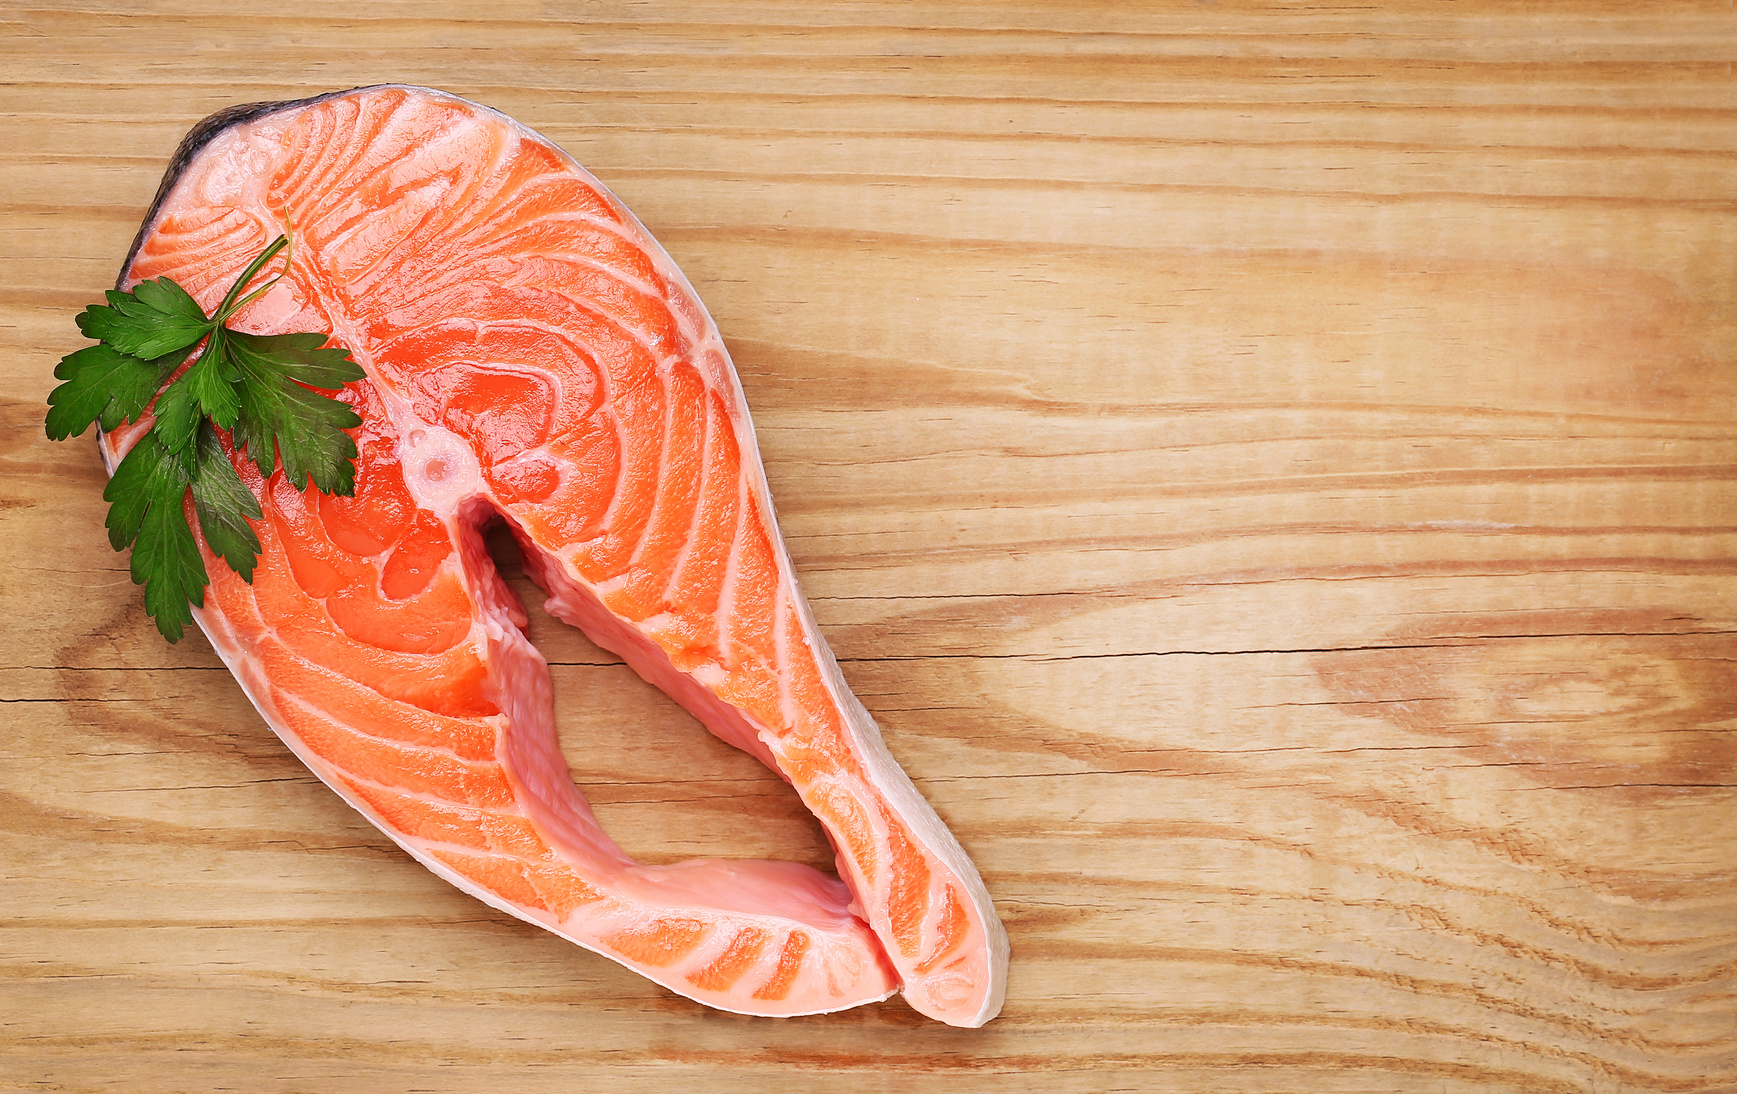 Saúde e Bem-Estar: 14 alimentos que ajudam a diminuir o colesterol 